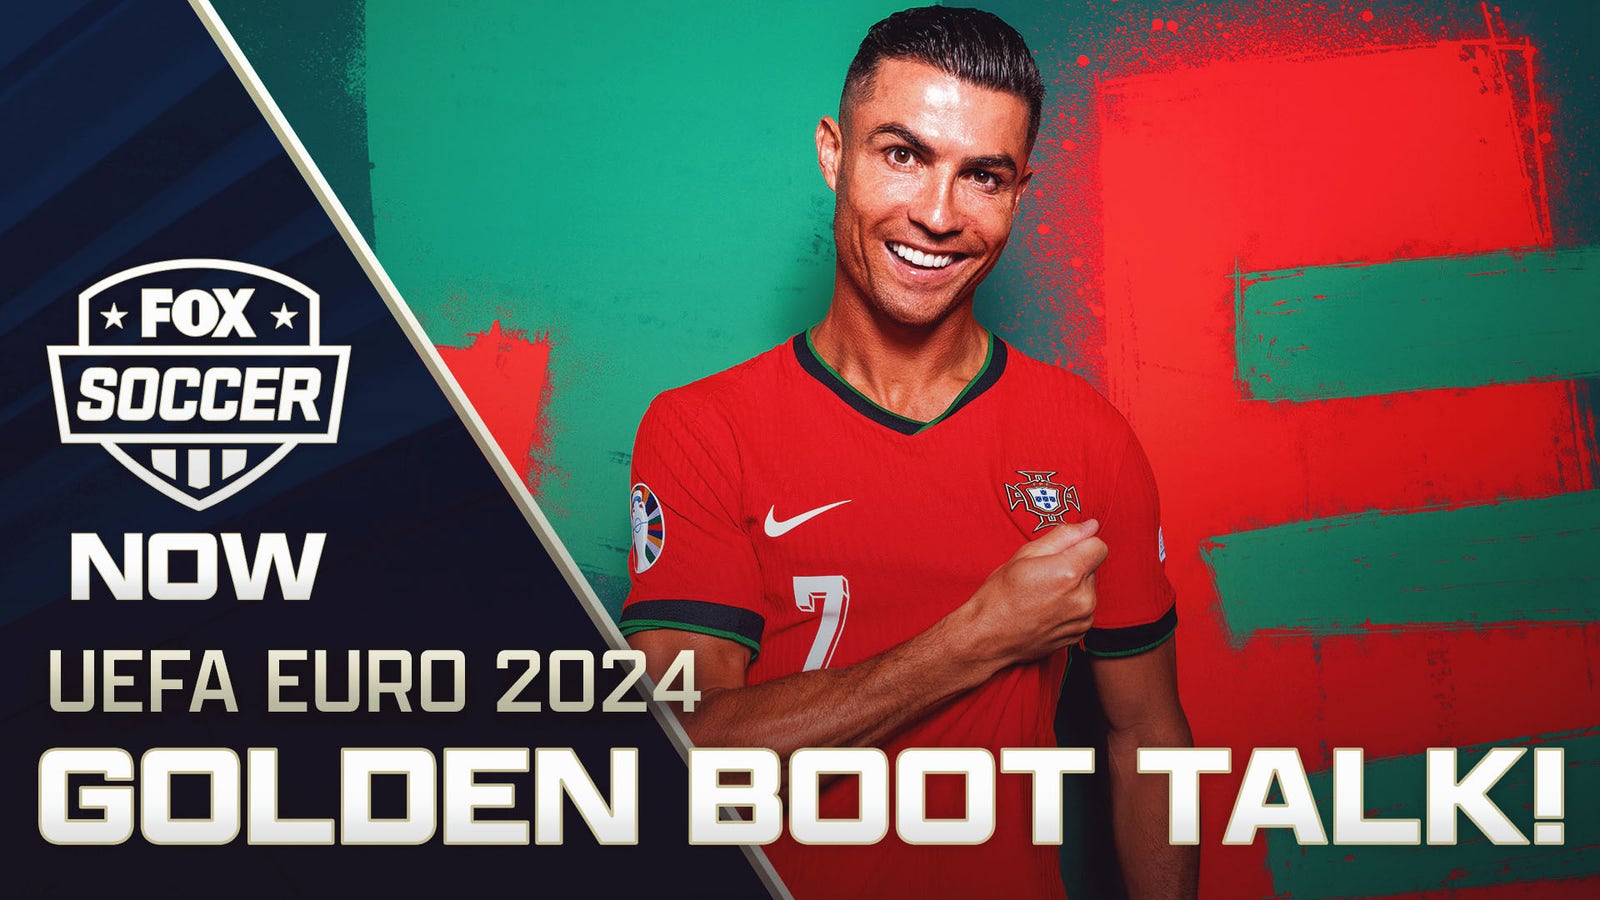 Will Cristiano Ronaldo win the Golden Boot at Euro 2024?